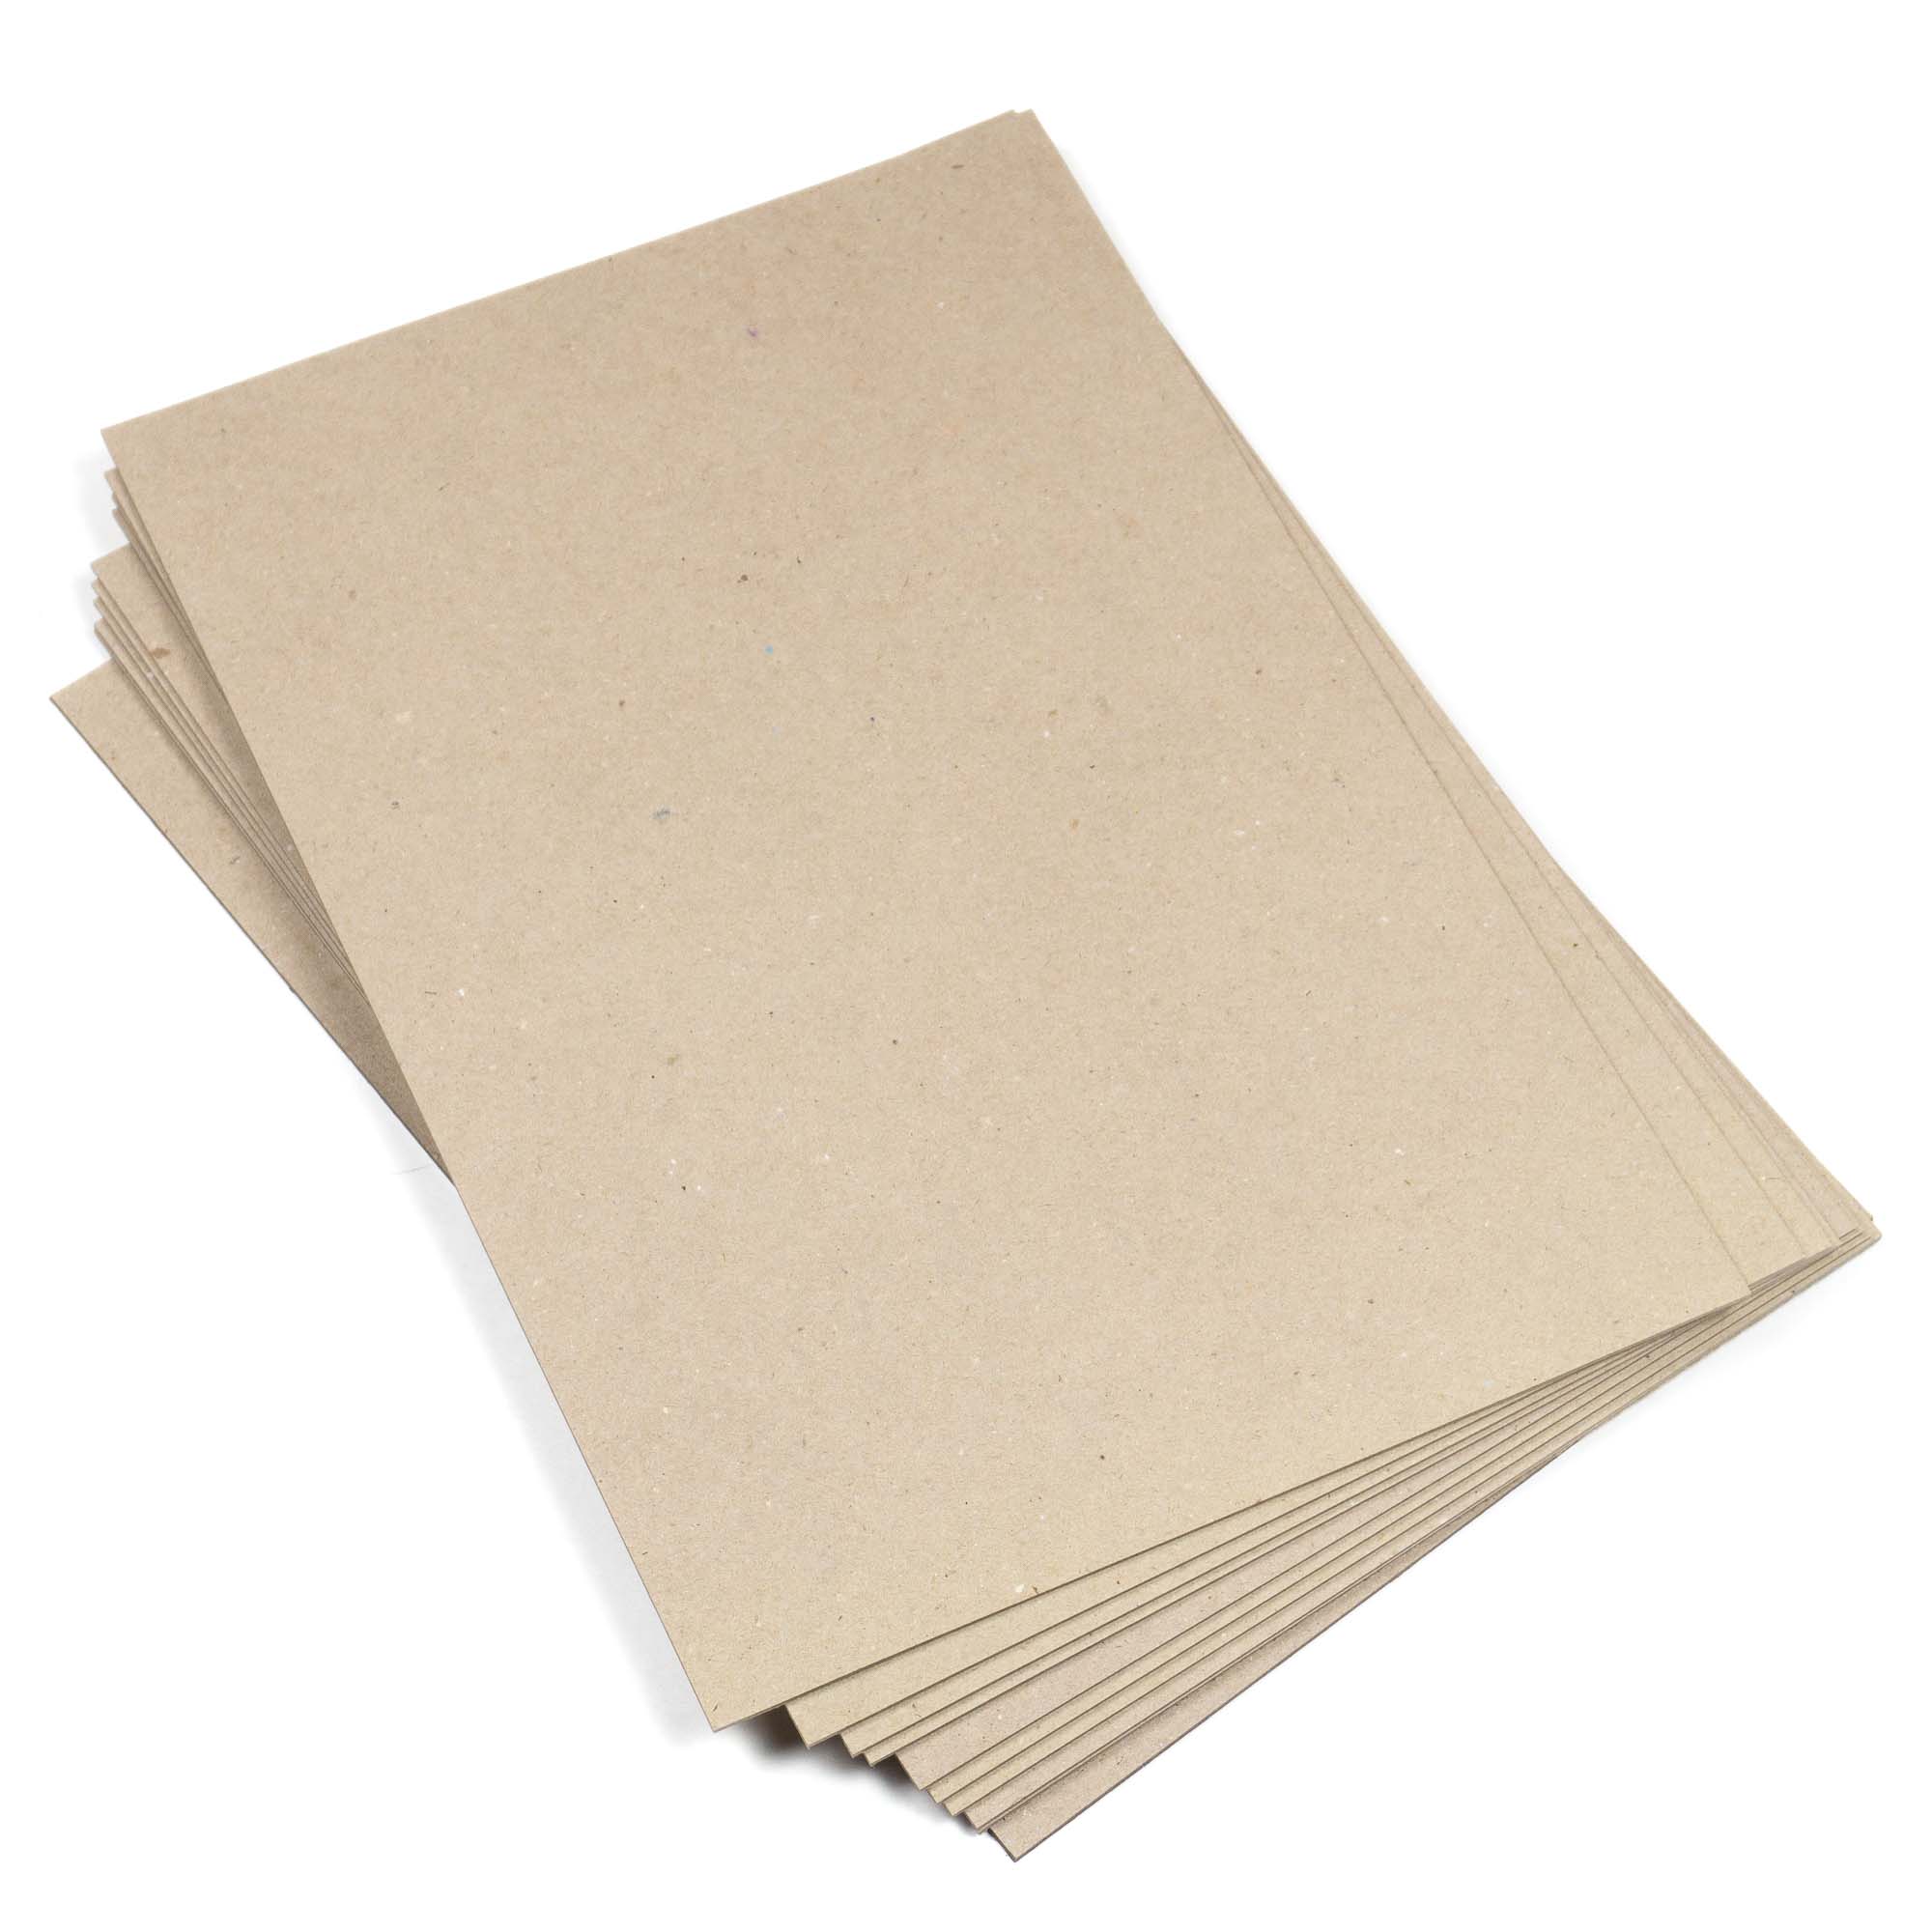 pour reliure 1600 g/m2 Lot de 10 feuilles 260 x 380 mm scrapbooking Carton rigide compact 2,5 mm carton rigide pressé travaux manuels 26 x 38 cm 